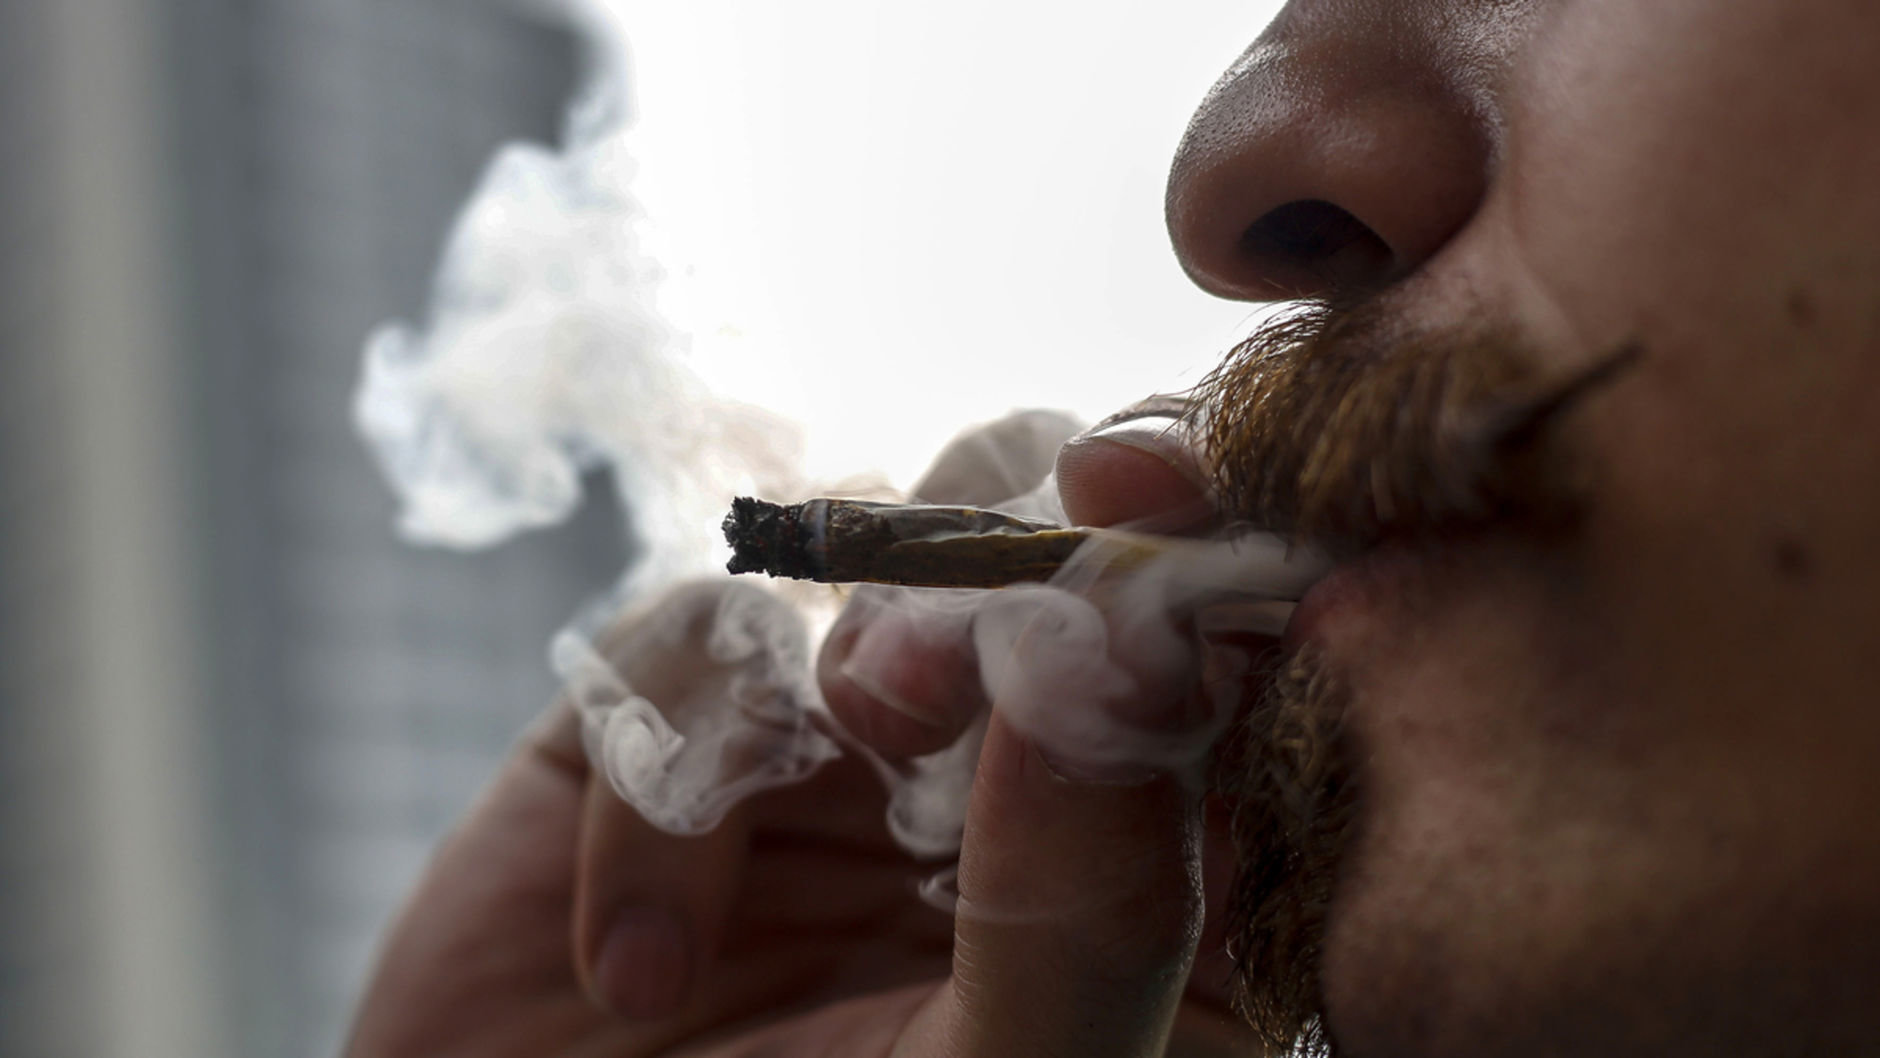 Une étude explique pourquoi les effets du cannabis varient d'une personne à l'autre